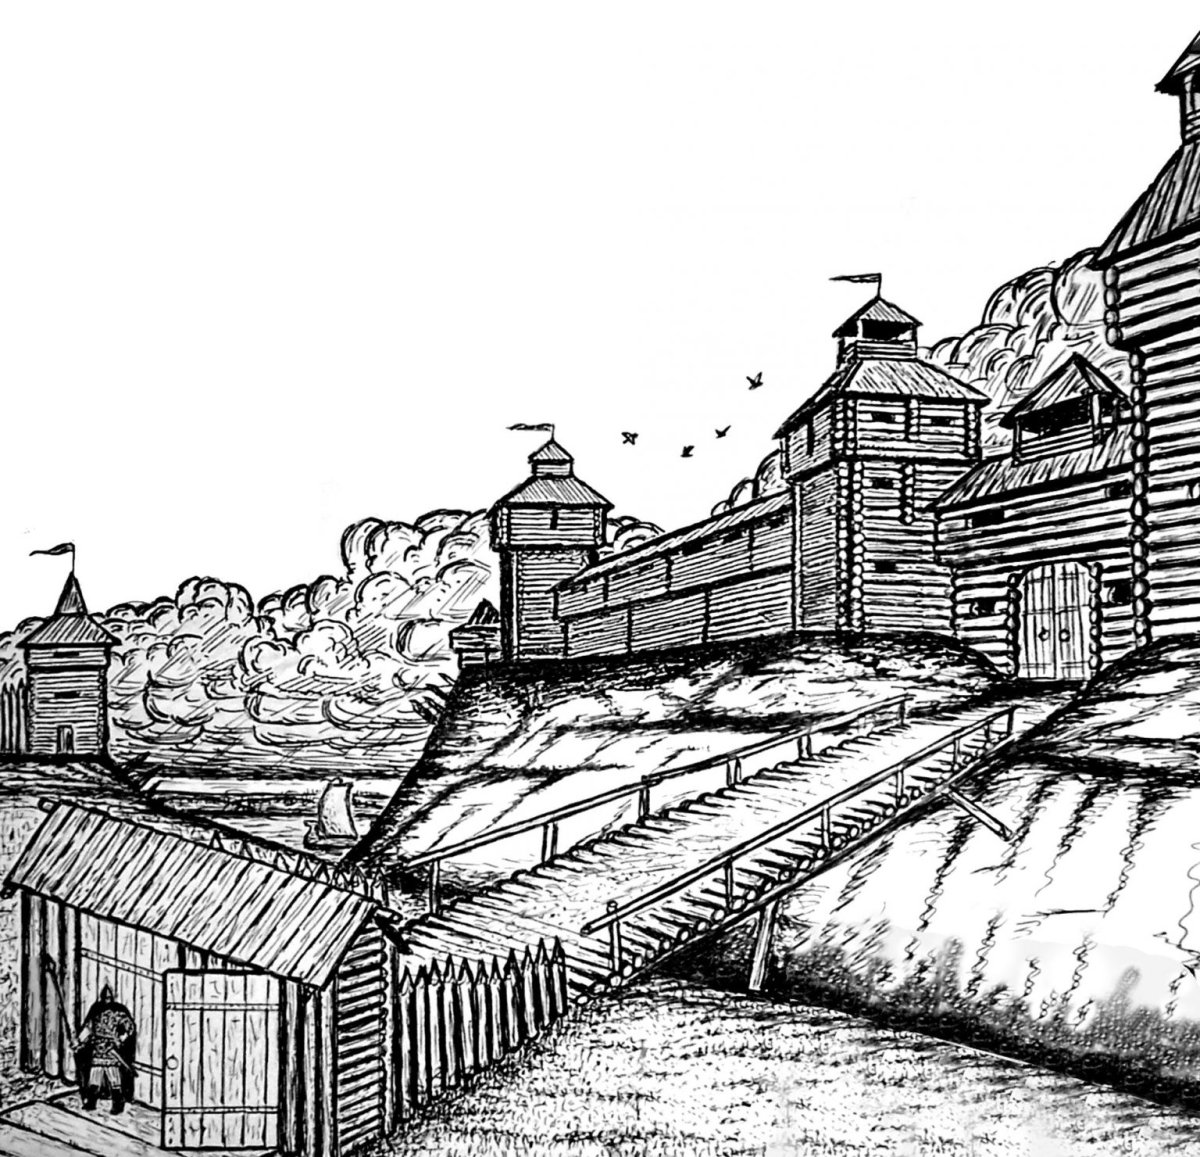 Курская крепость 17 век